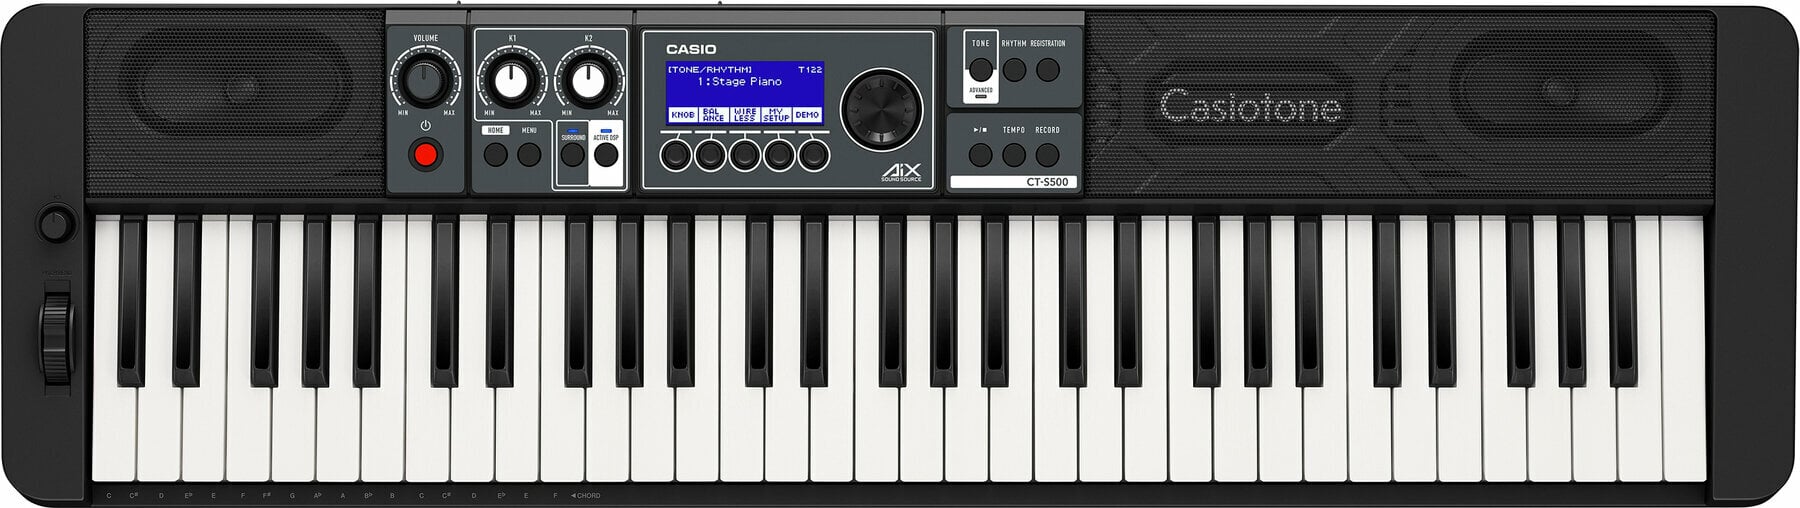 Keyboard met aanslaggevoeligheid Casio CT-S500